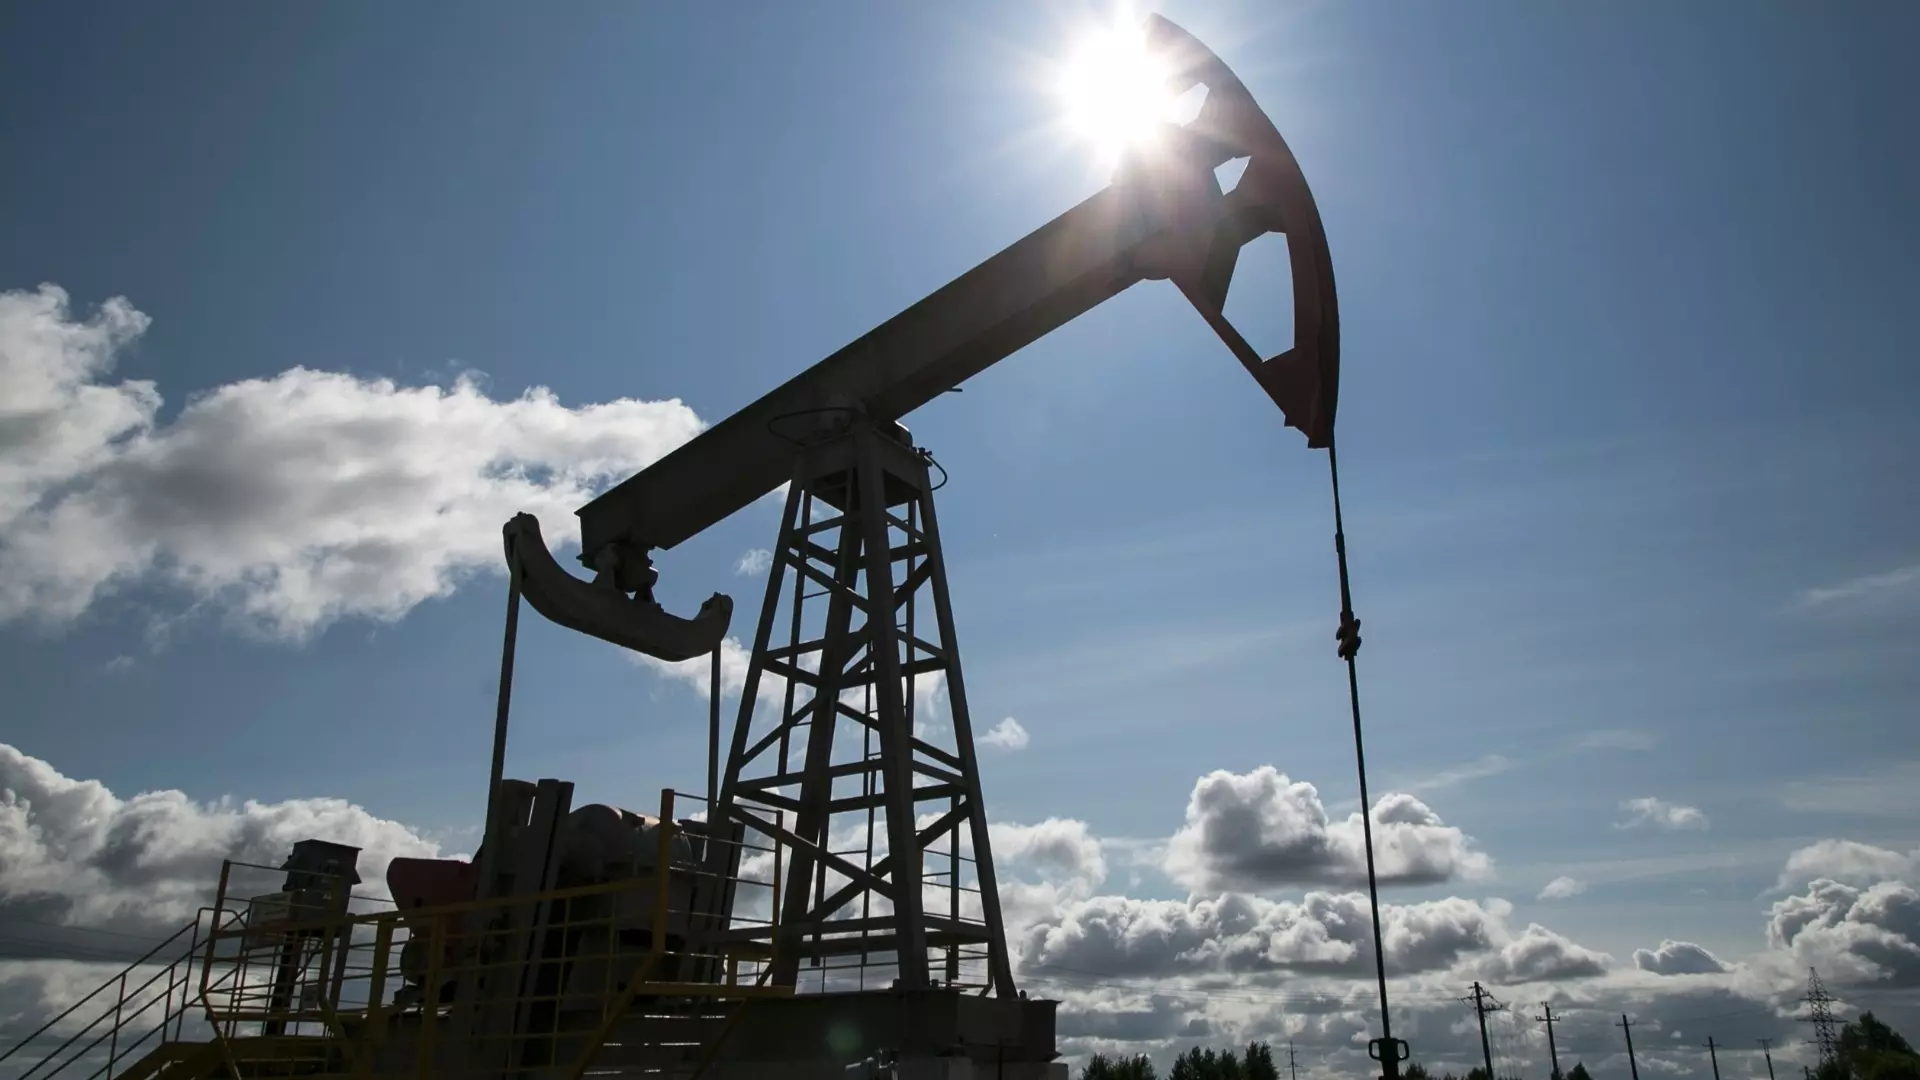 Нефтяные месторождения начали распродавать под Волгоградом 